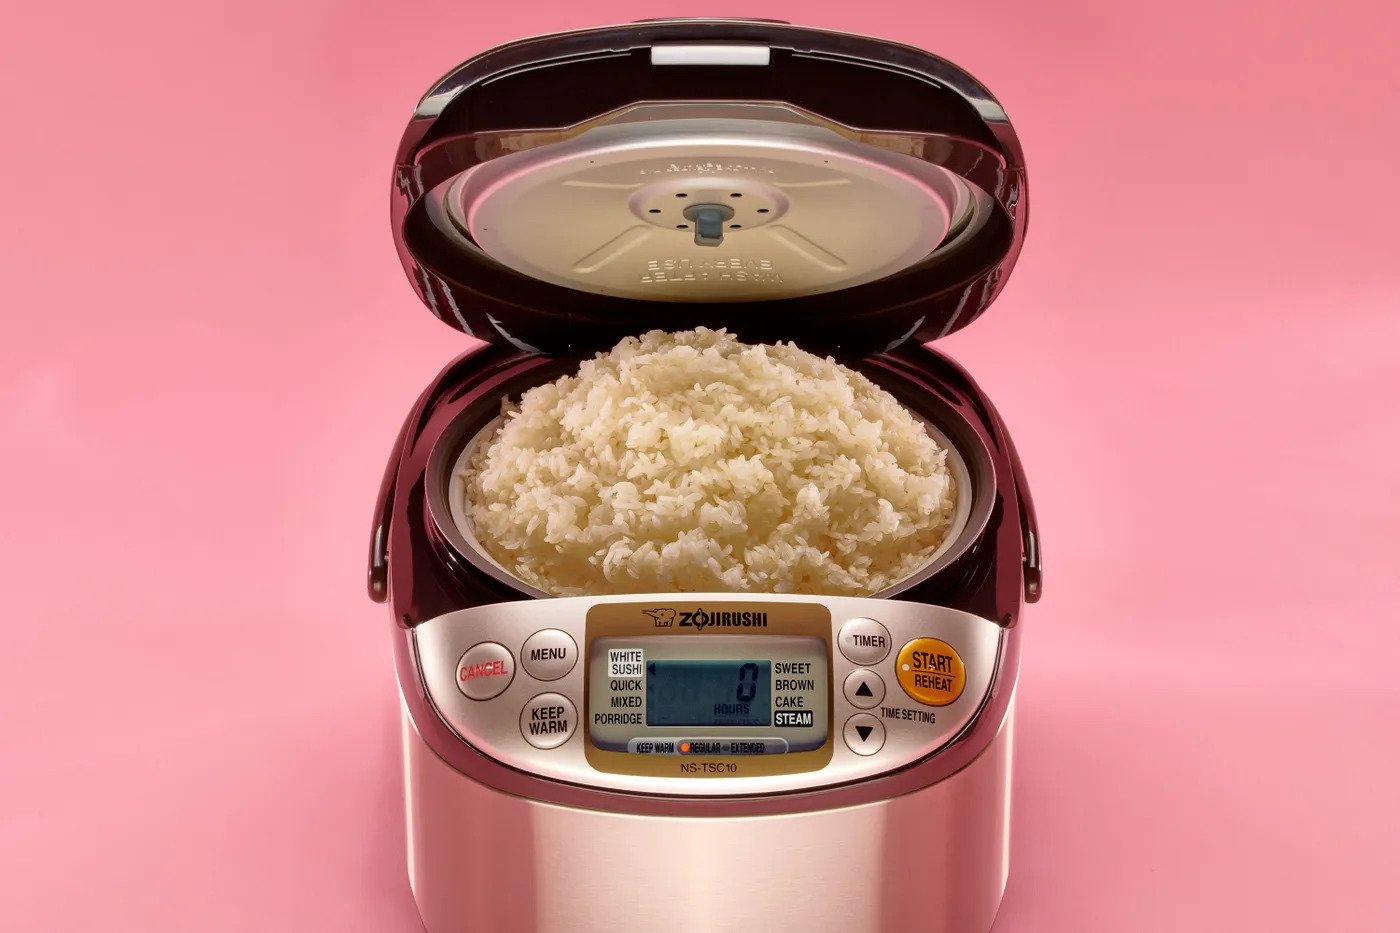 An open rice cooker